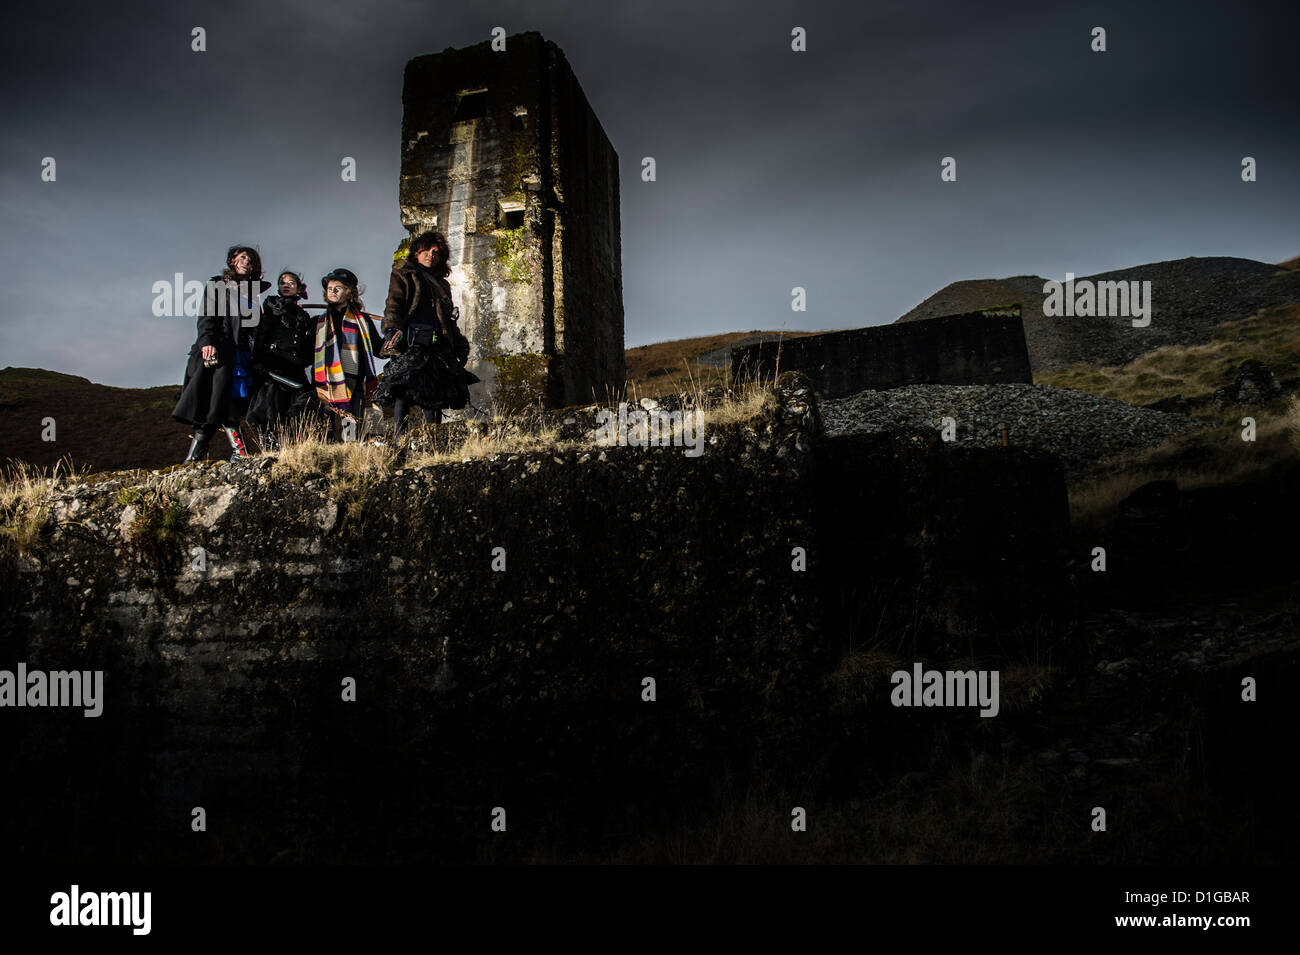 Un Post 'Apocalypse' cosplay style photo-shoot emplacement dans Bwlch Glas mine de plomb abandonnée, Mid Wales UK Banque D'Images